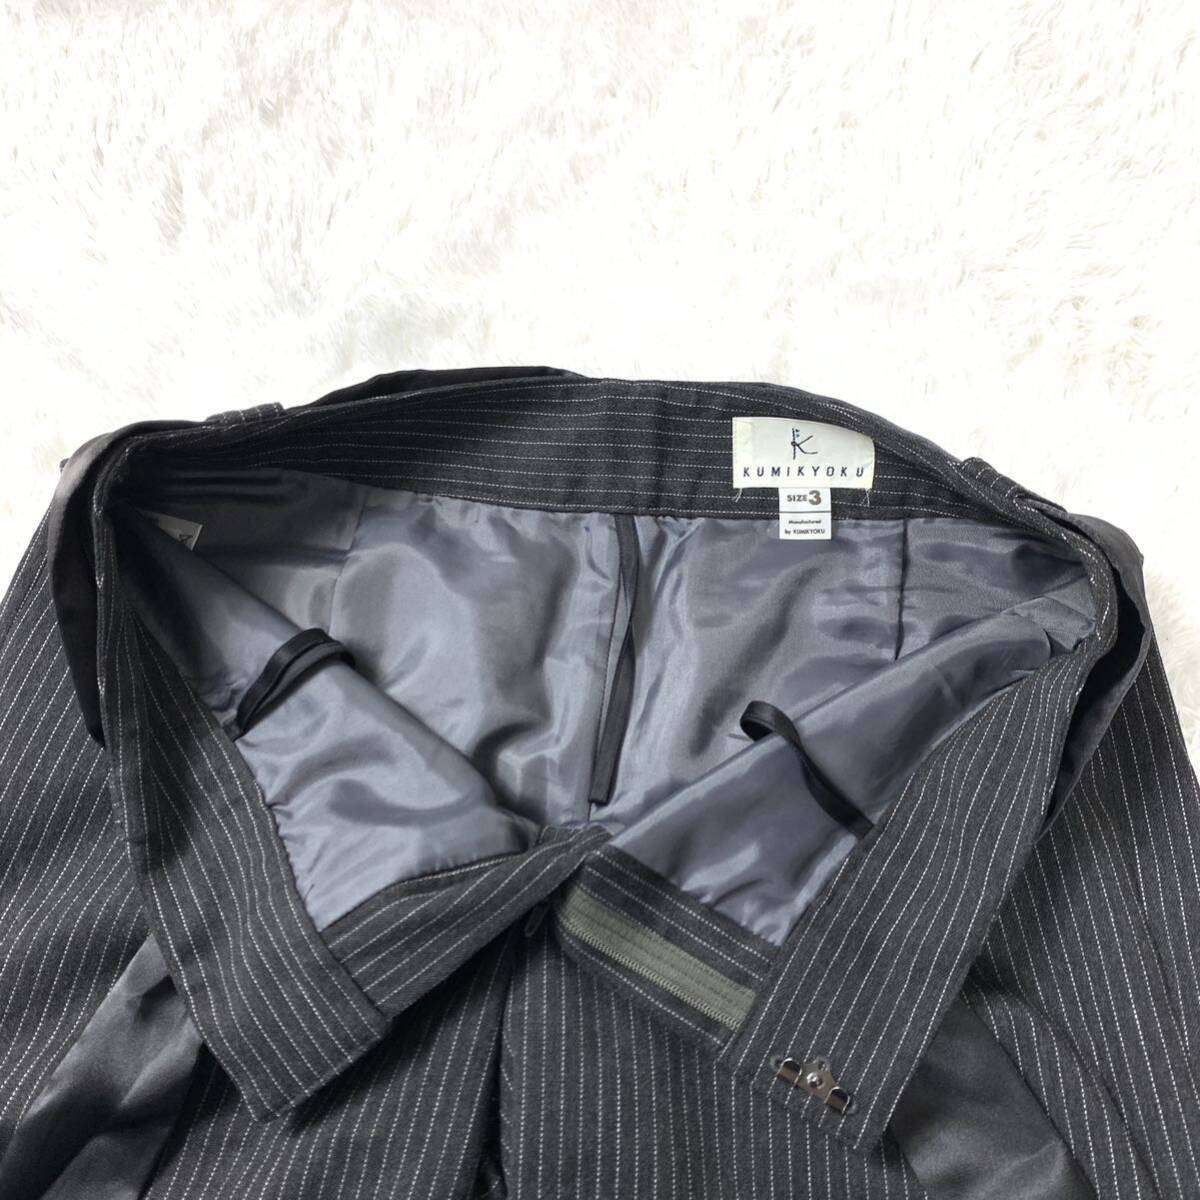  Kumikyoku shorts short pants dark gray stripe ribbon belt attaching 3 YA6646